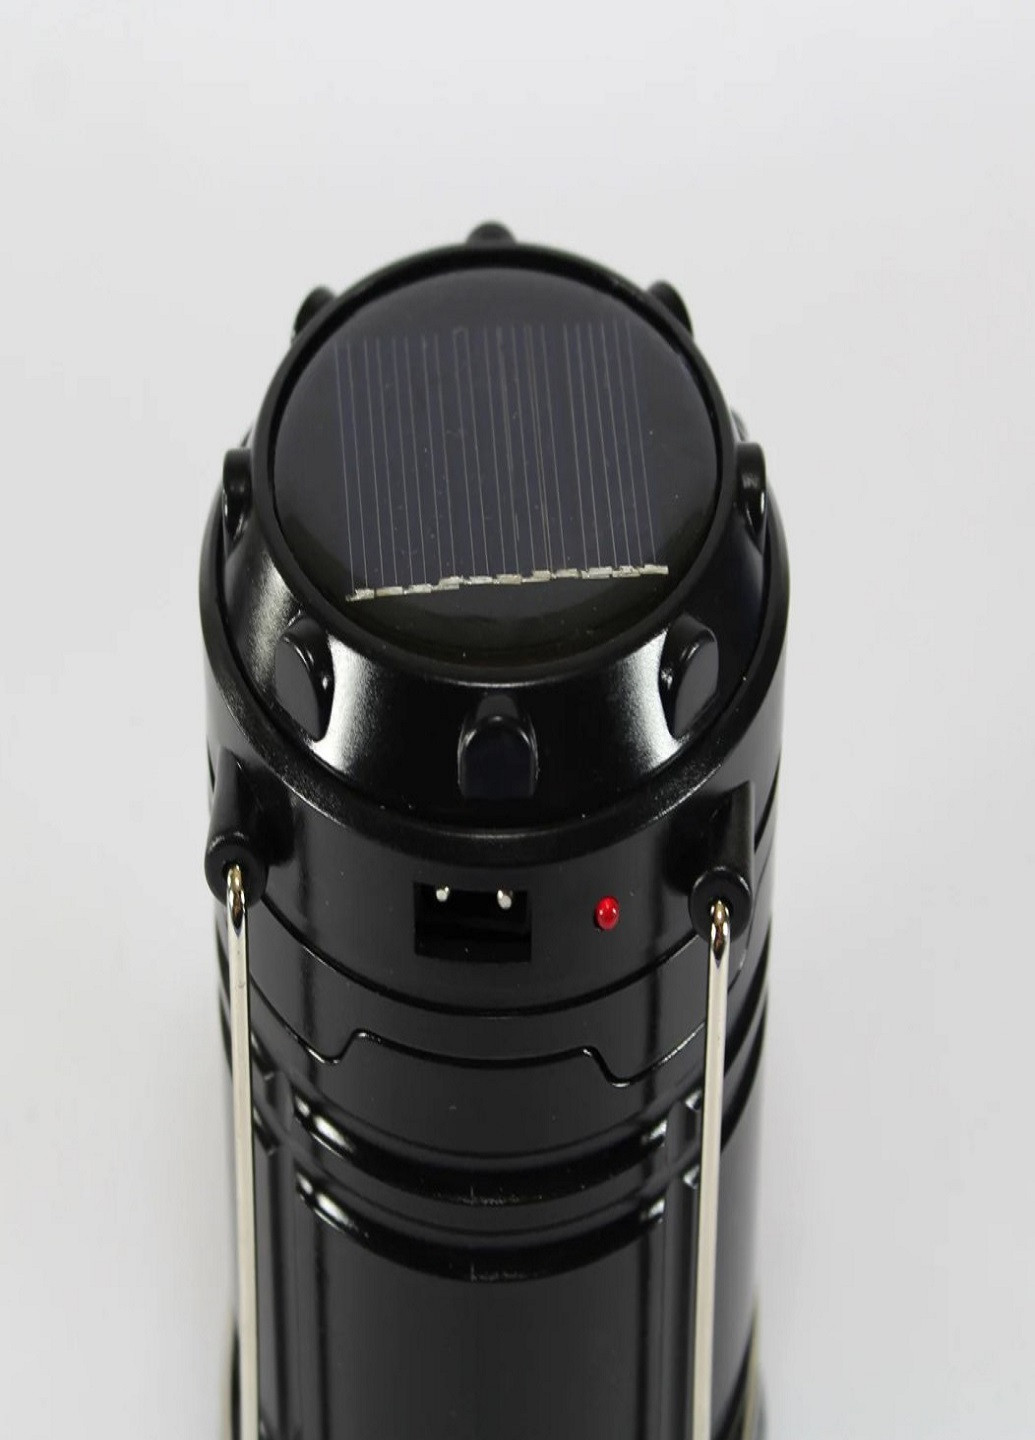 Кемпинговая Лампа G85 аккумуляторная с солнечной панелью Черная VTech (252481178)